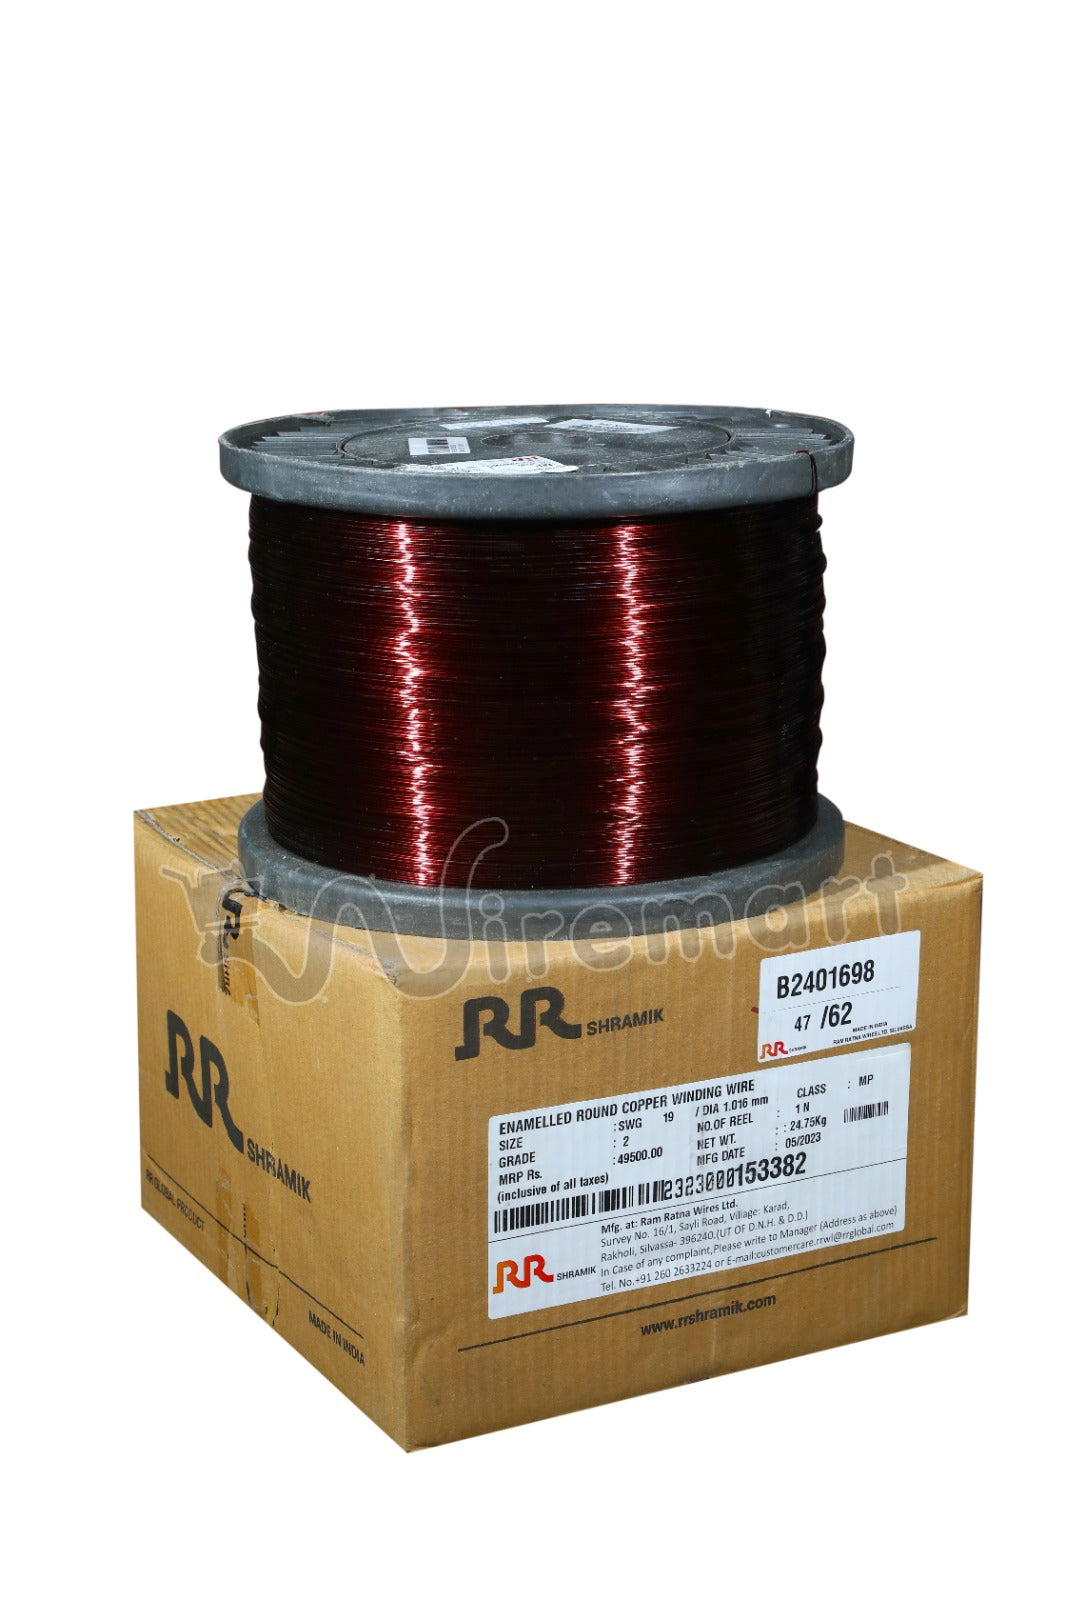 RR Shramik Copper Winding Wire